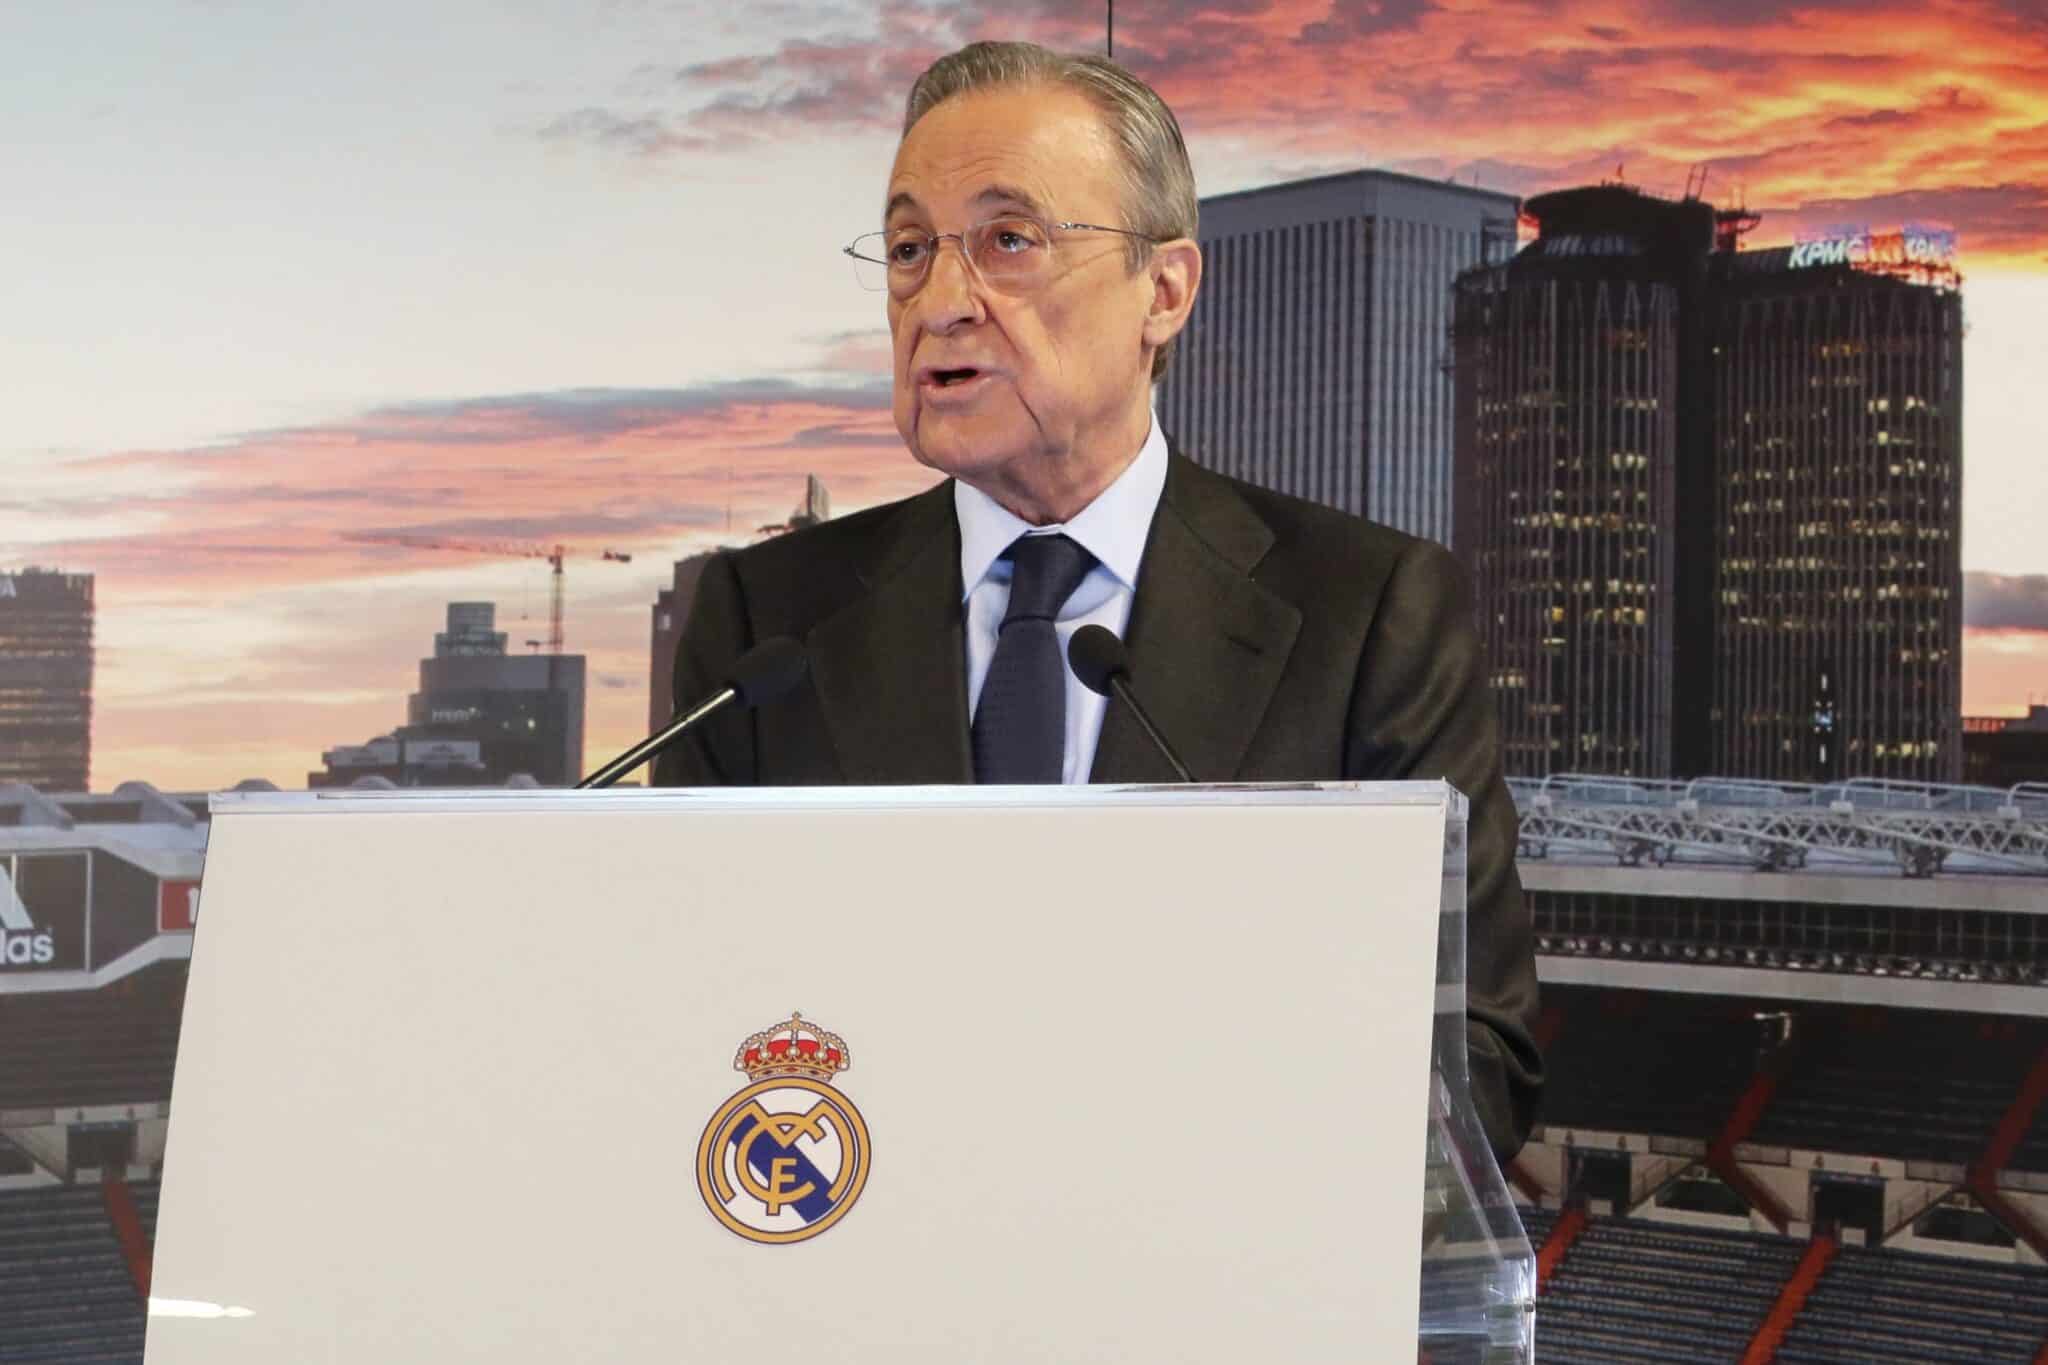 Barcelona y Real Madrid ingresan por derechos audiovisuales cantidades similares a los grandes de la Premier